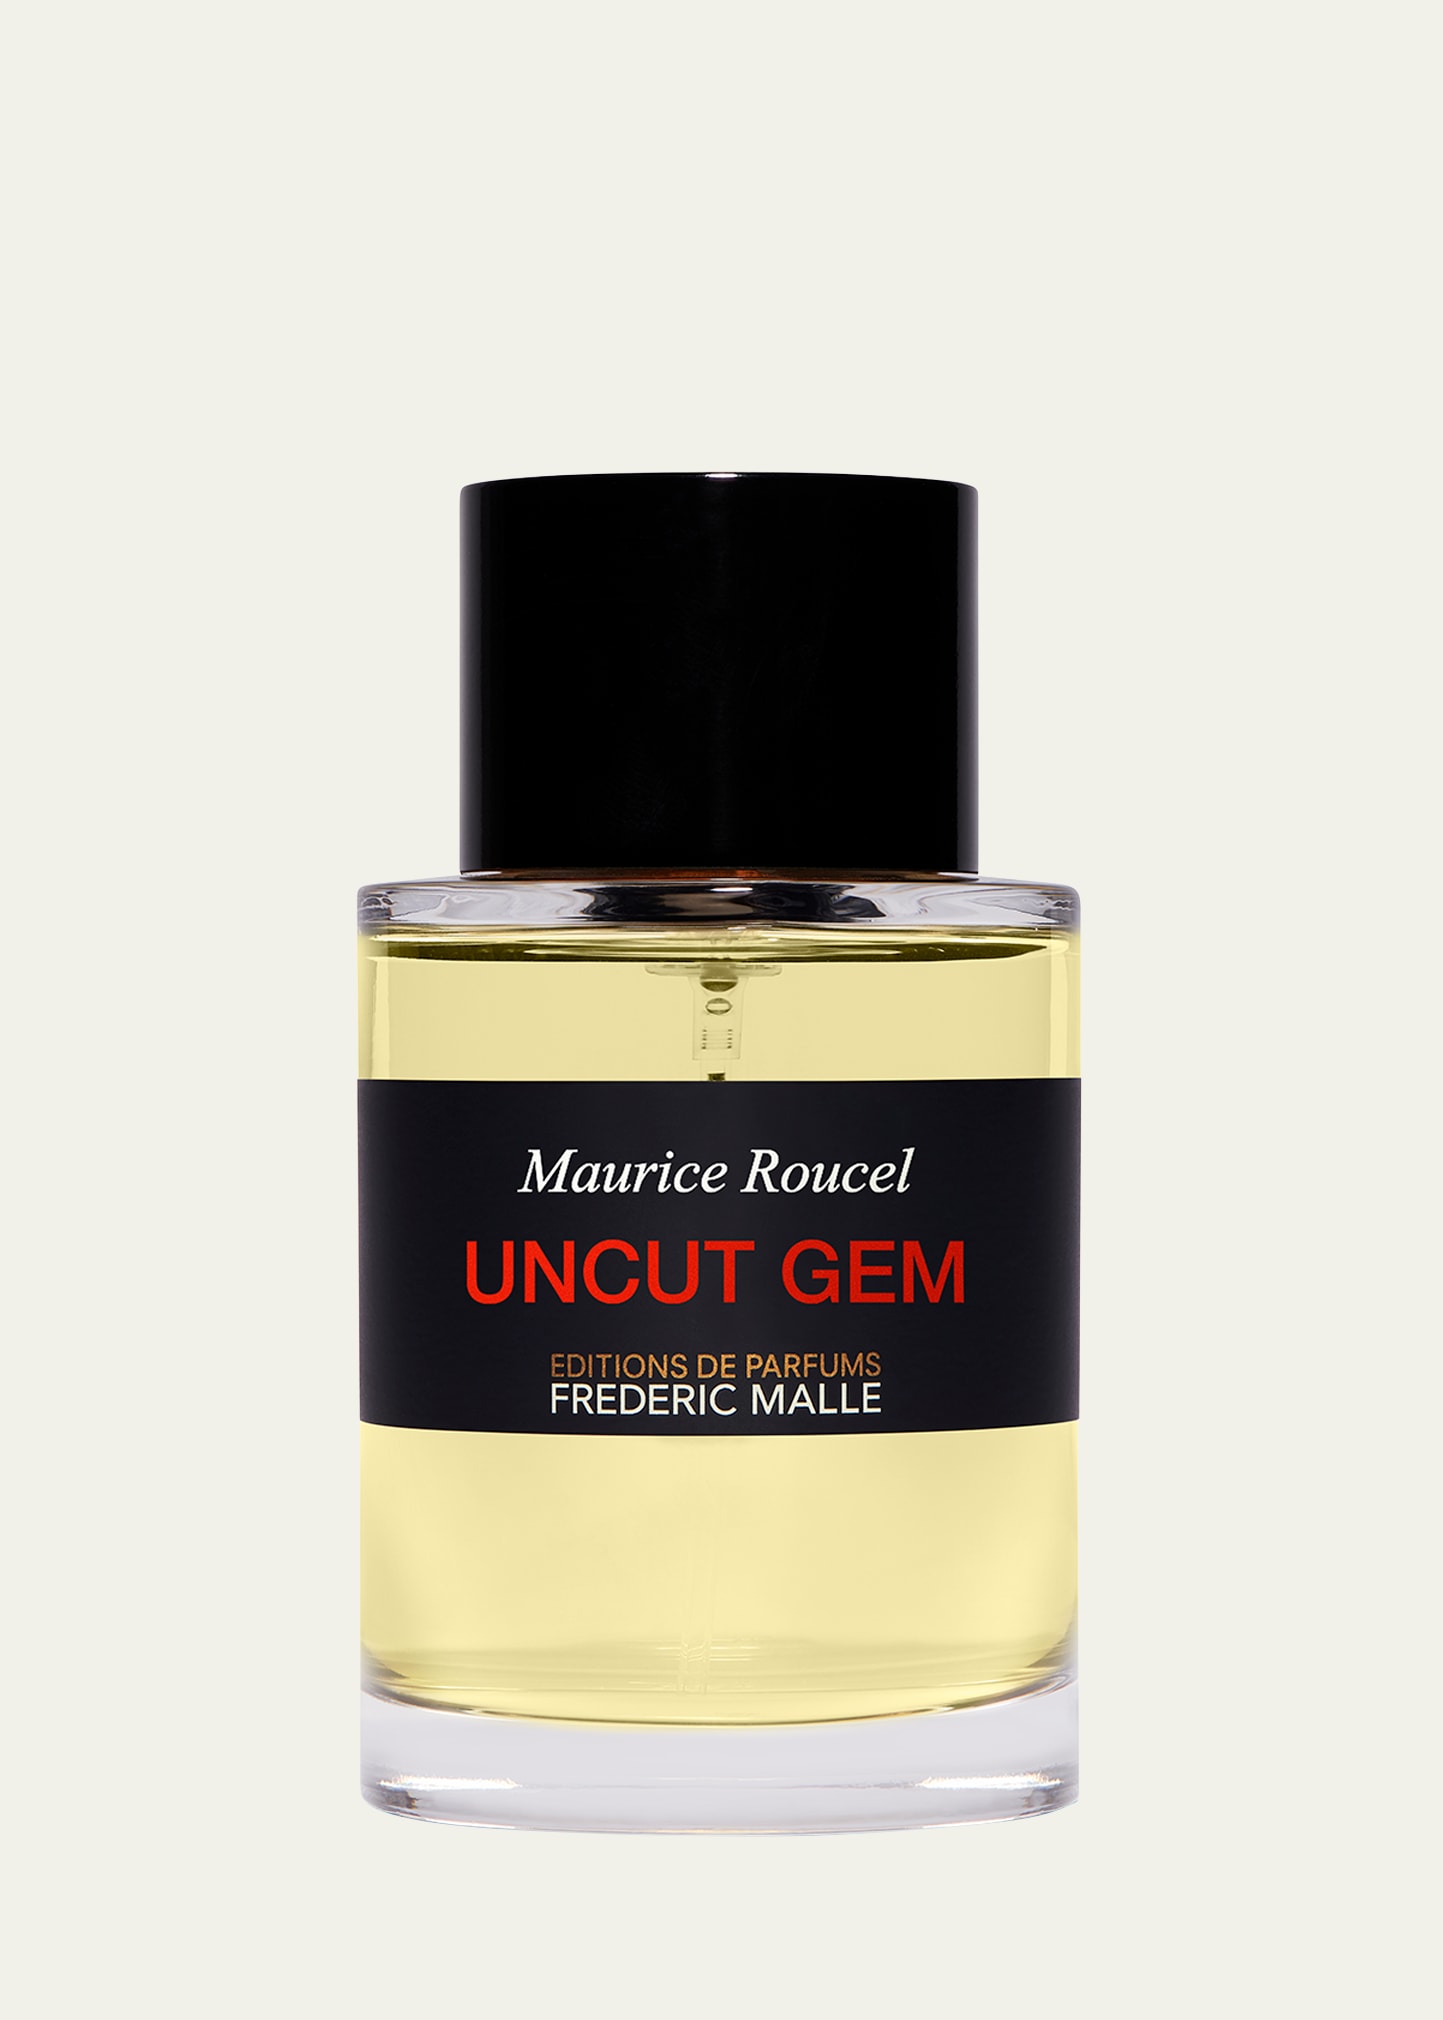 Editions De Parfums Frederic Malle Uncut Gem Pure Perfume, 3.4 Oz.